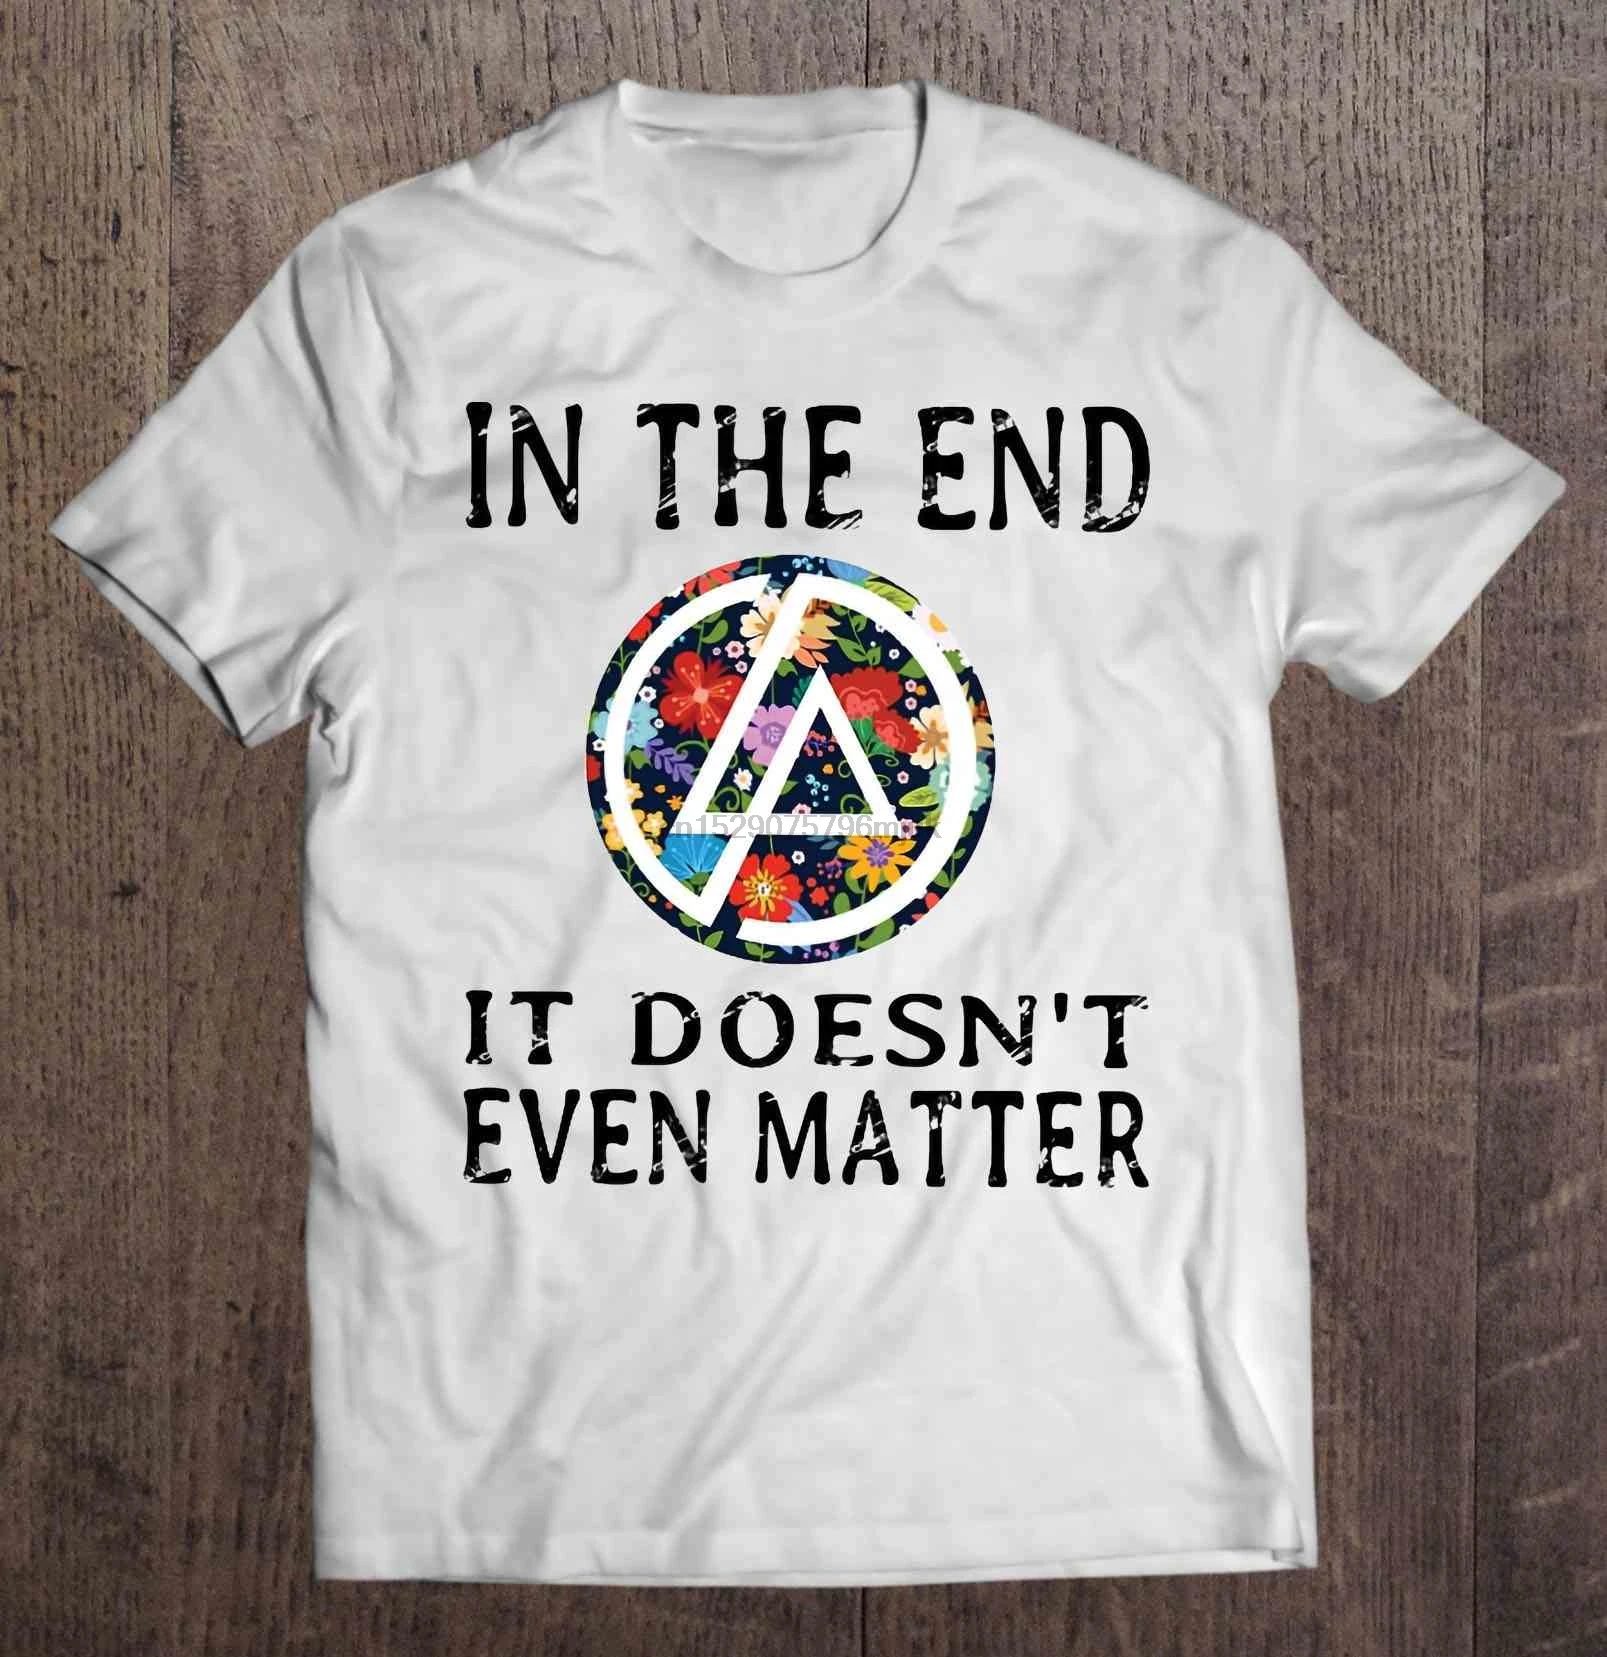 Men T Shirt In The End It Doesn T Even Matter Linkin Park Version Women T Shirt T Shirts Aliexpress